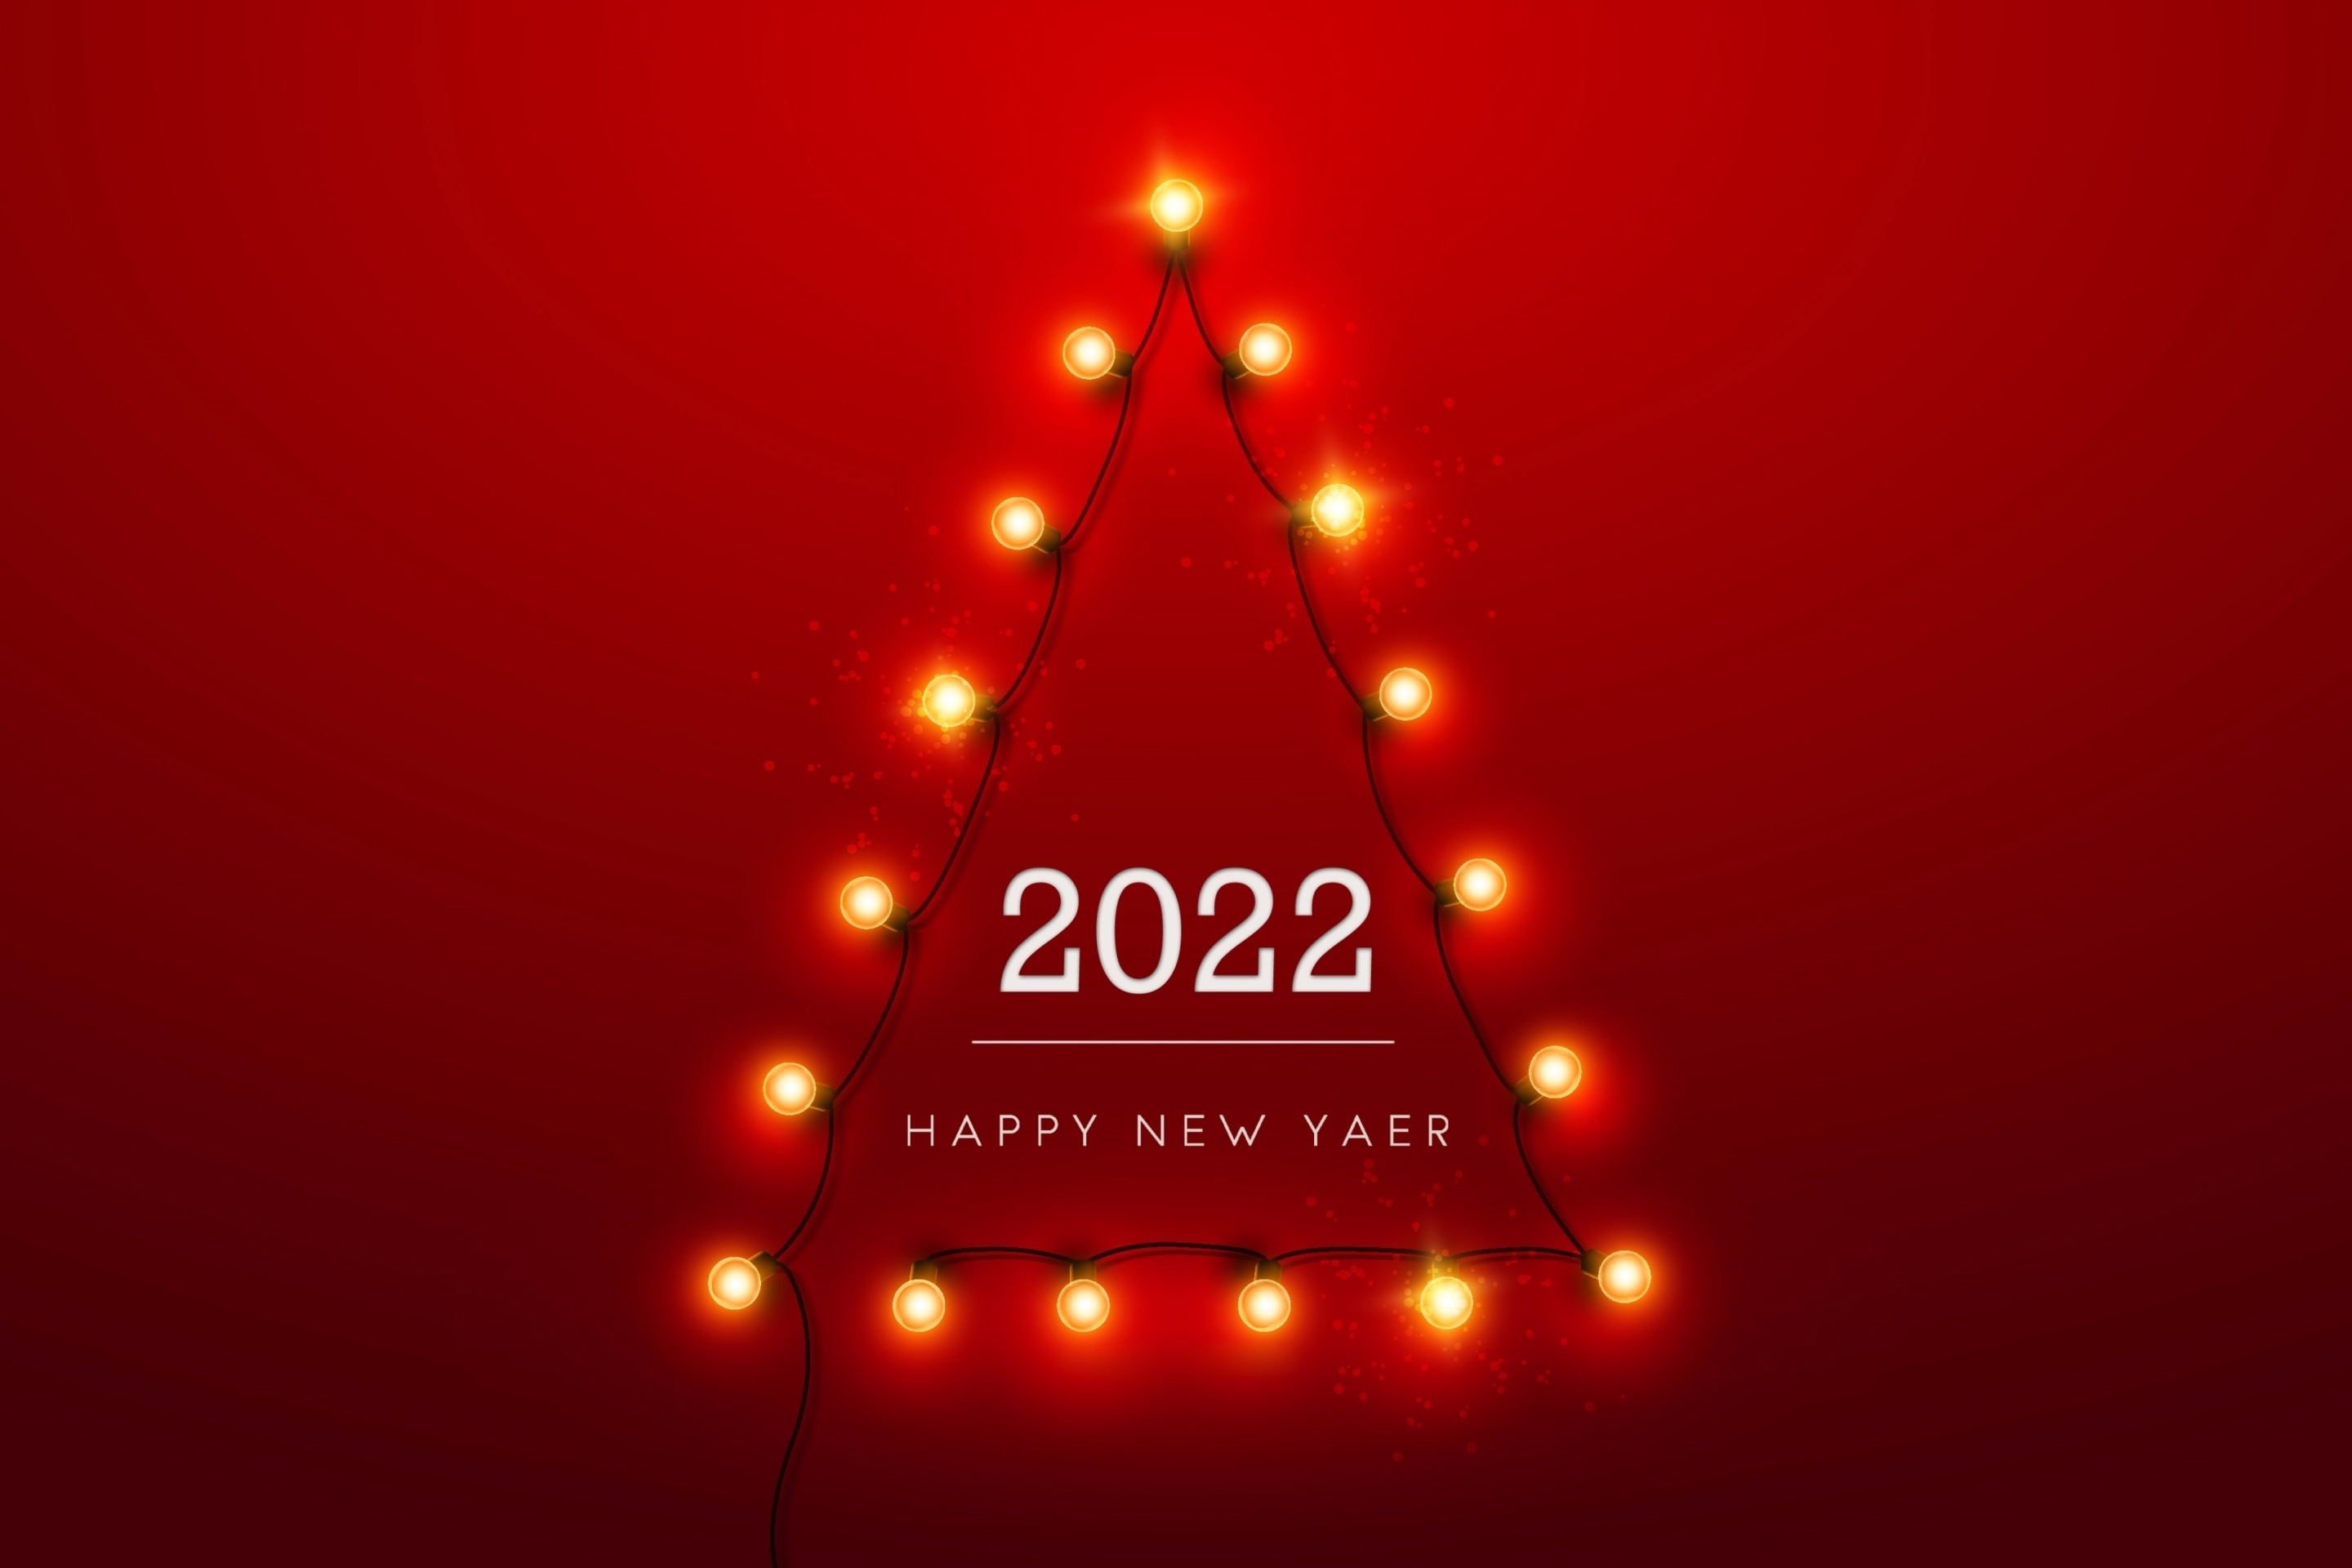 Обои Happy New Year 2022 2880x1920